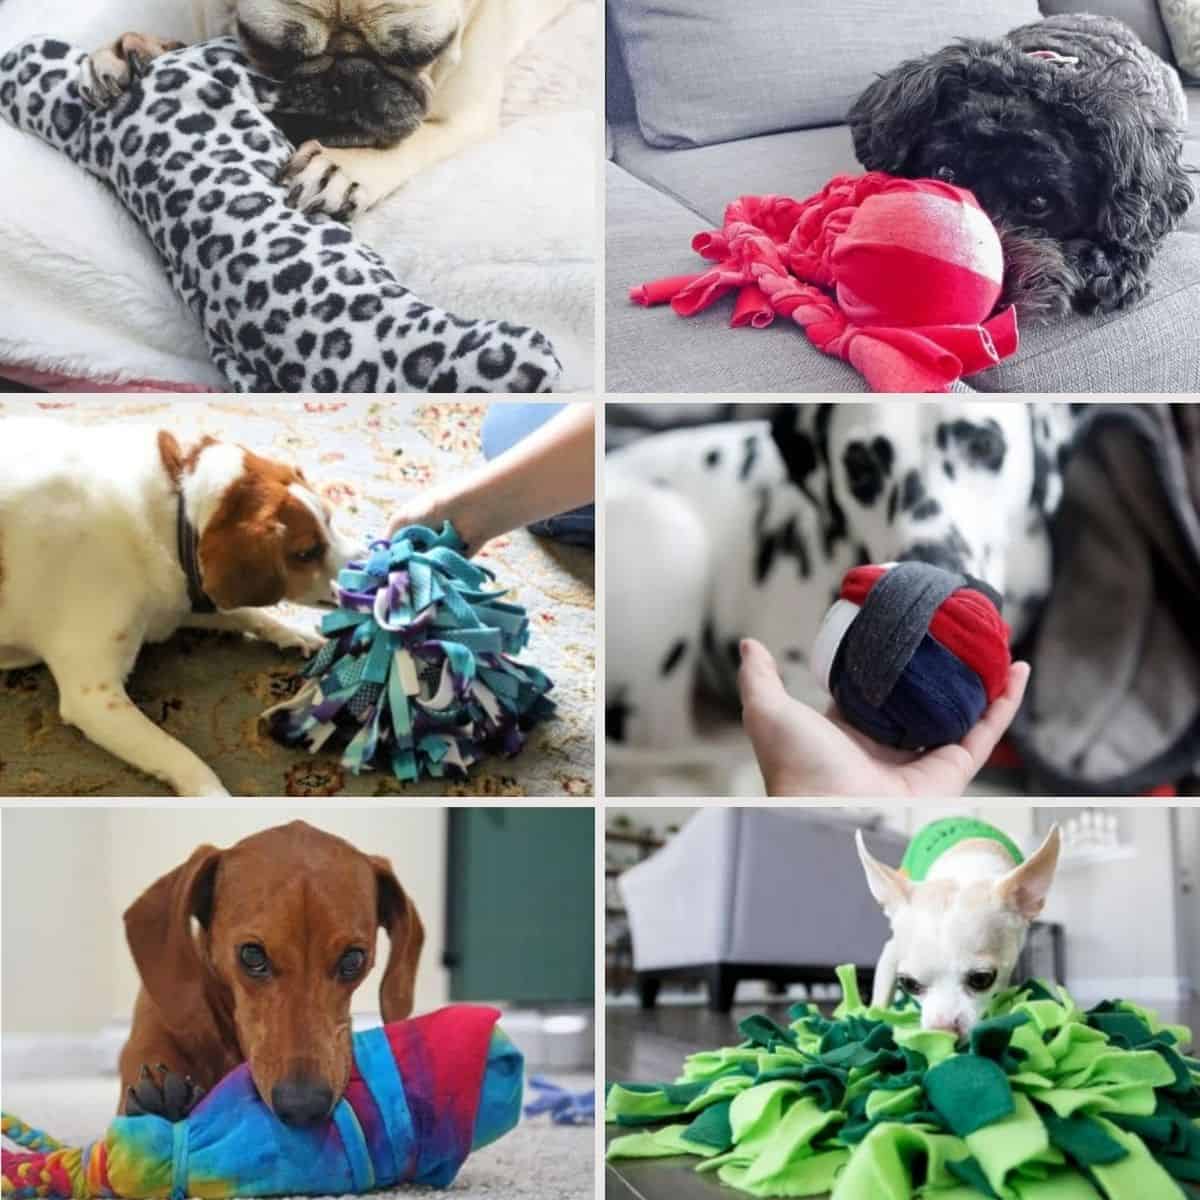 https://www.thepaws.net/wp-content/uploads/2021/02/dog-toys-fb-1.jpg